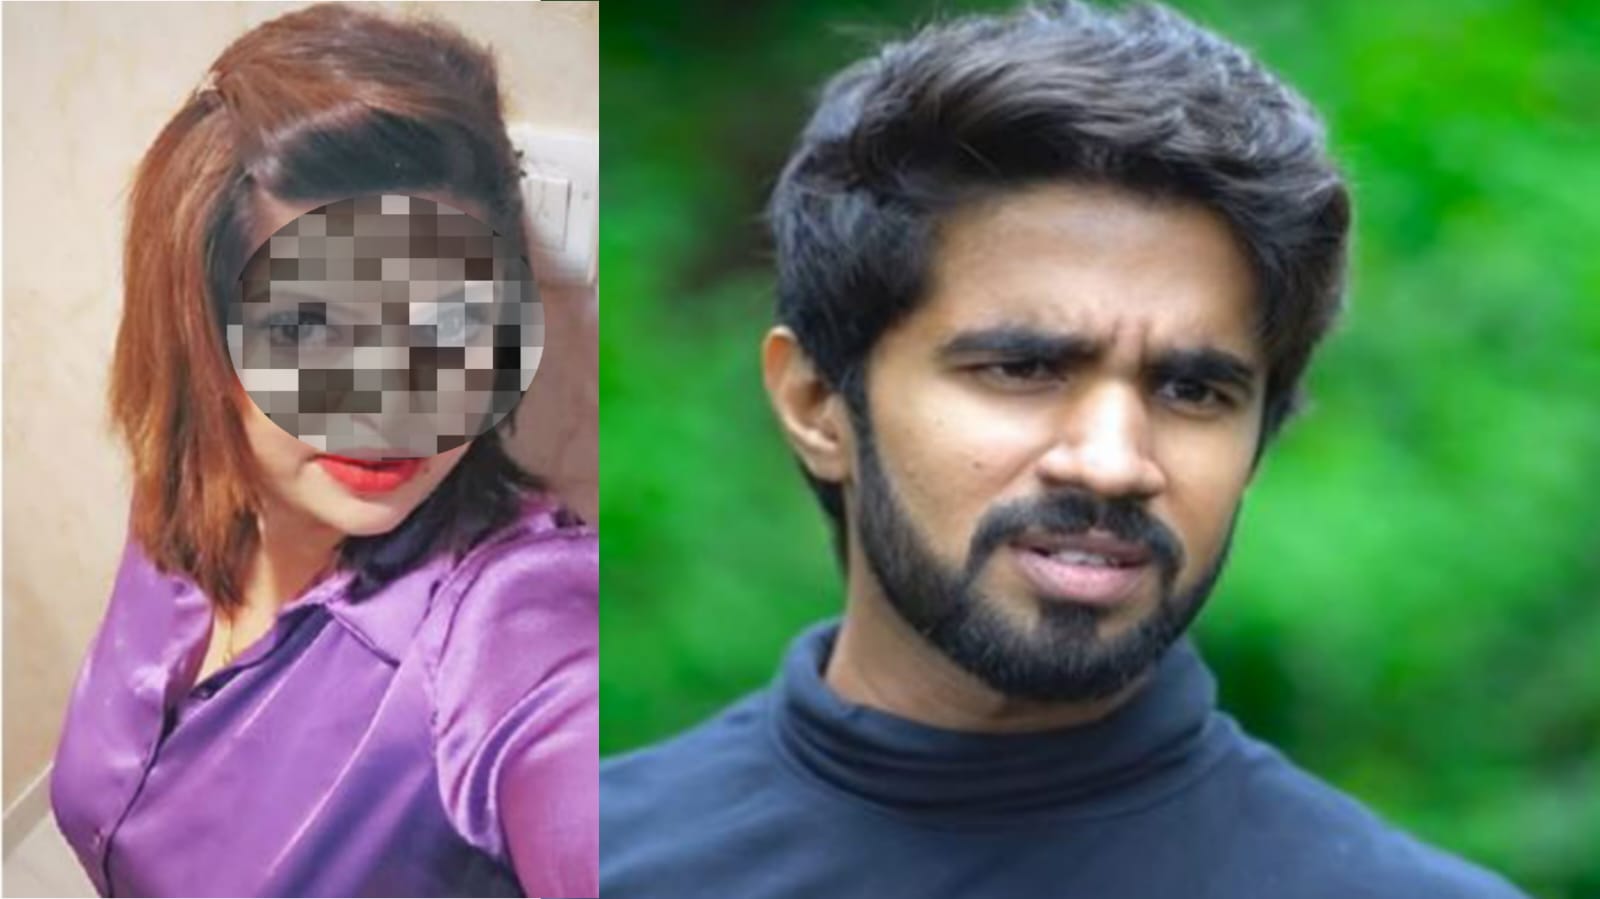 حیدرآباد میں ایک لڑکی نے نوجوان لڑکے کو شادی کے لیے اغوا کر لیا